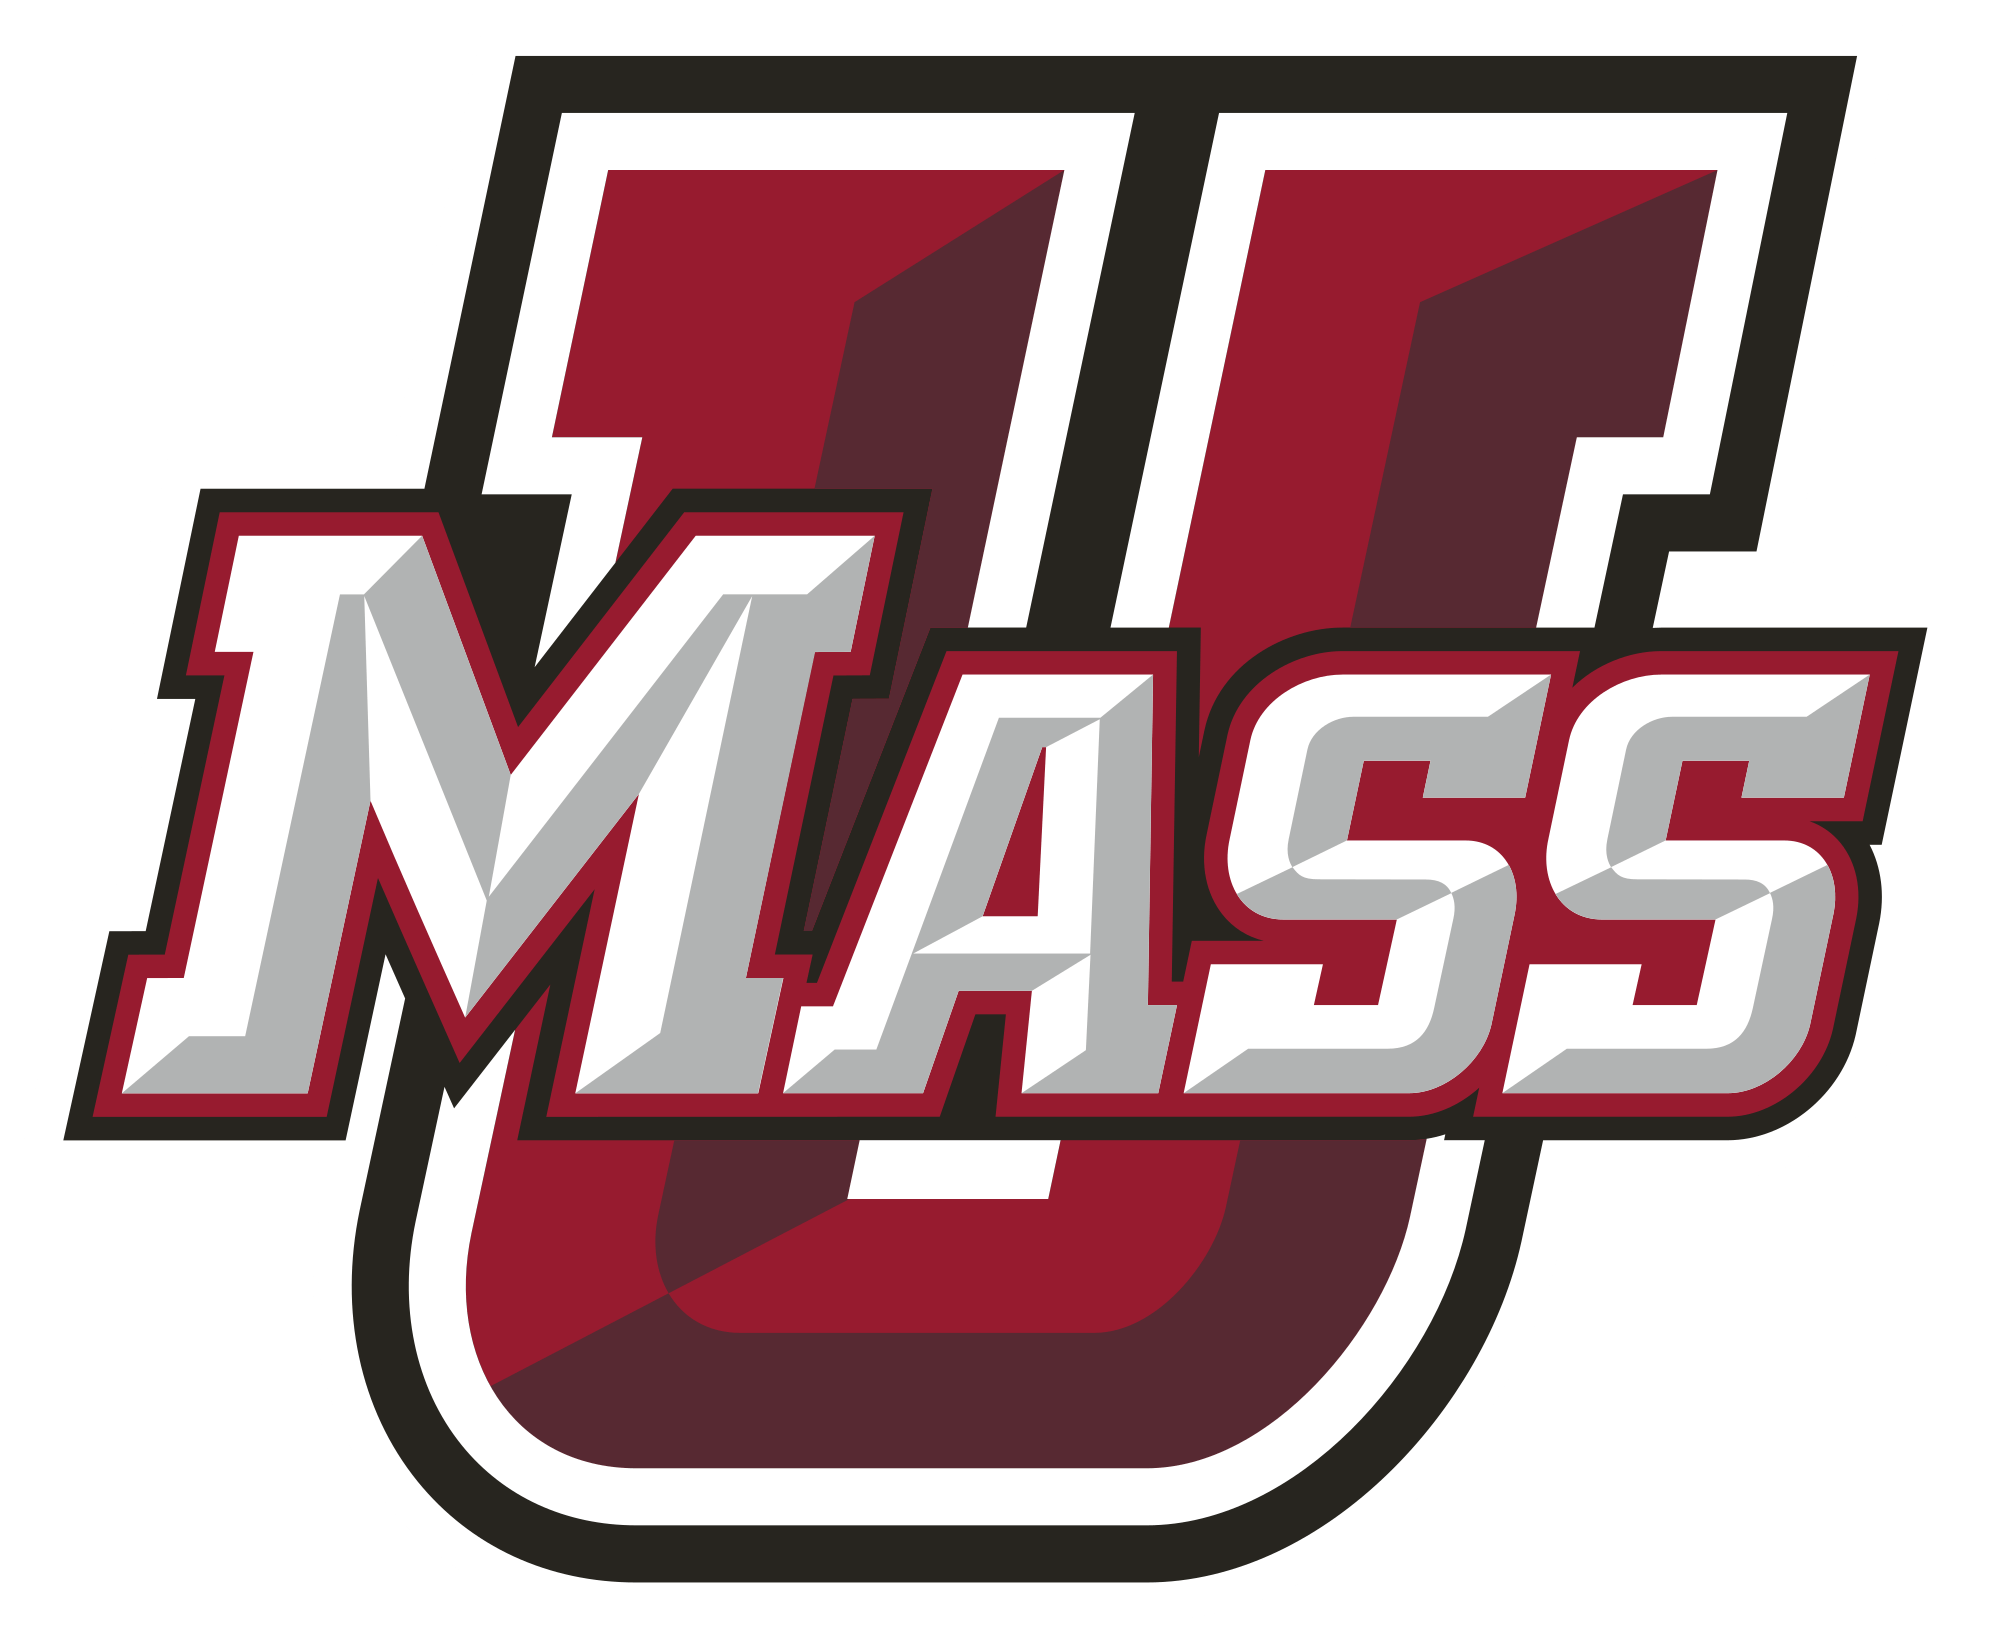 University of Massachusetts Logo - File:UMass Amherst Athletics logo.svg - Wikimedia Commons